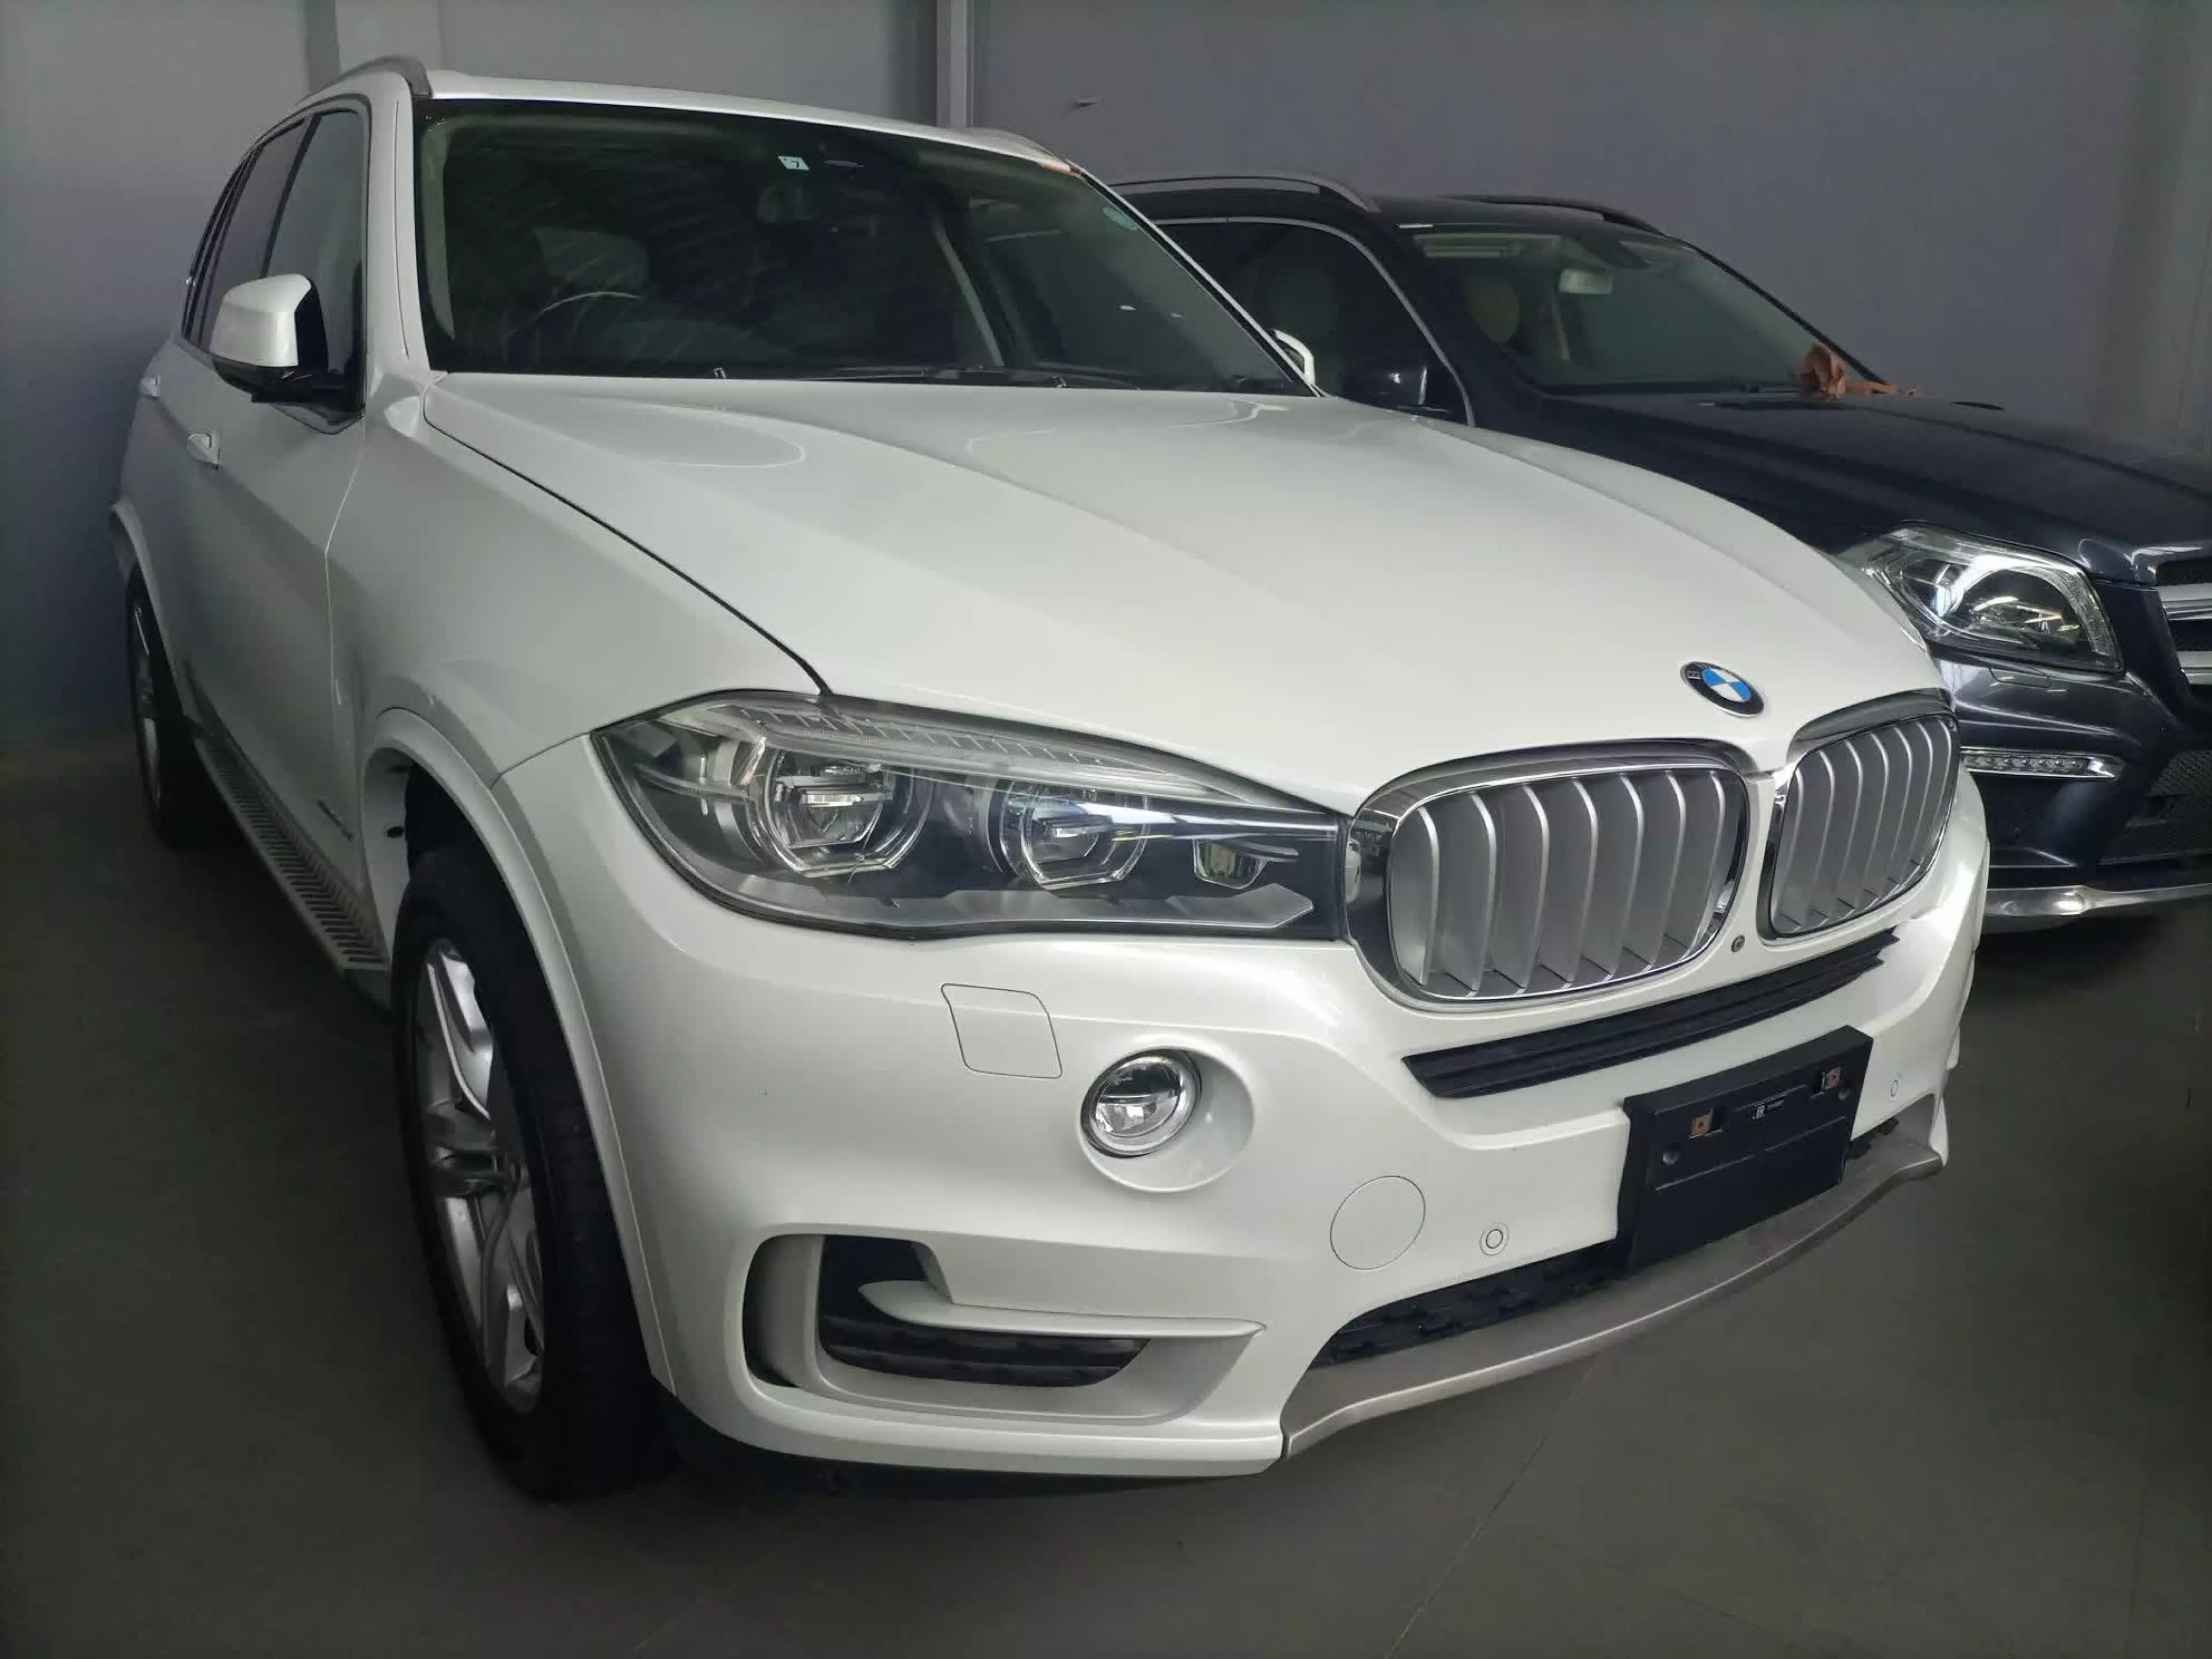 BMW X5 - 2014